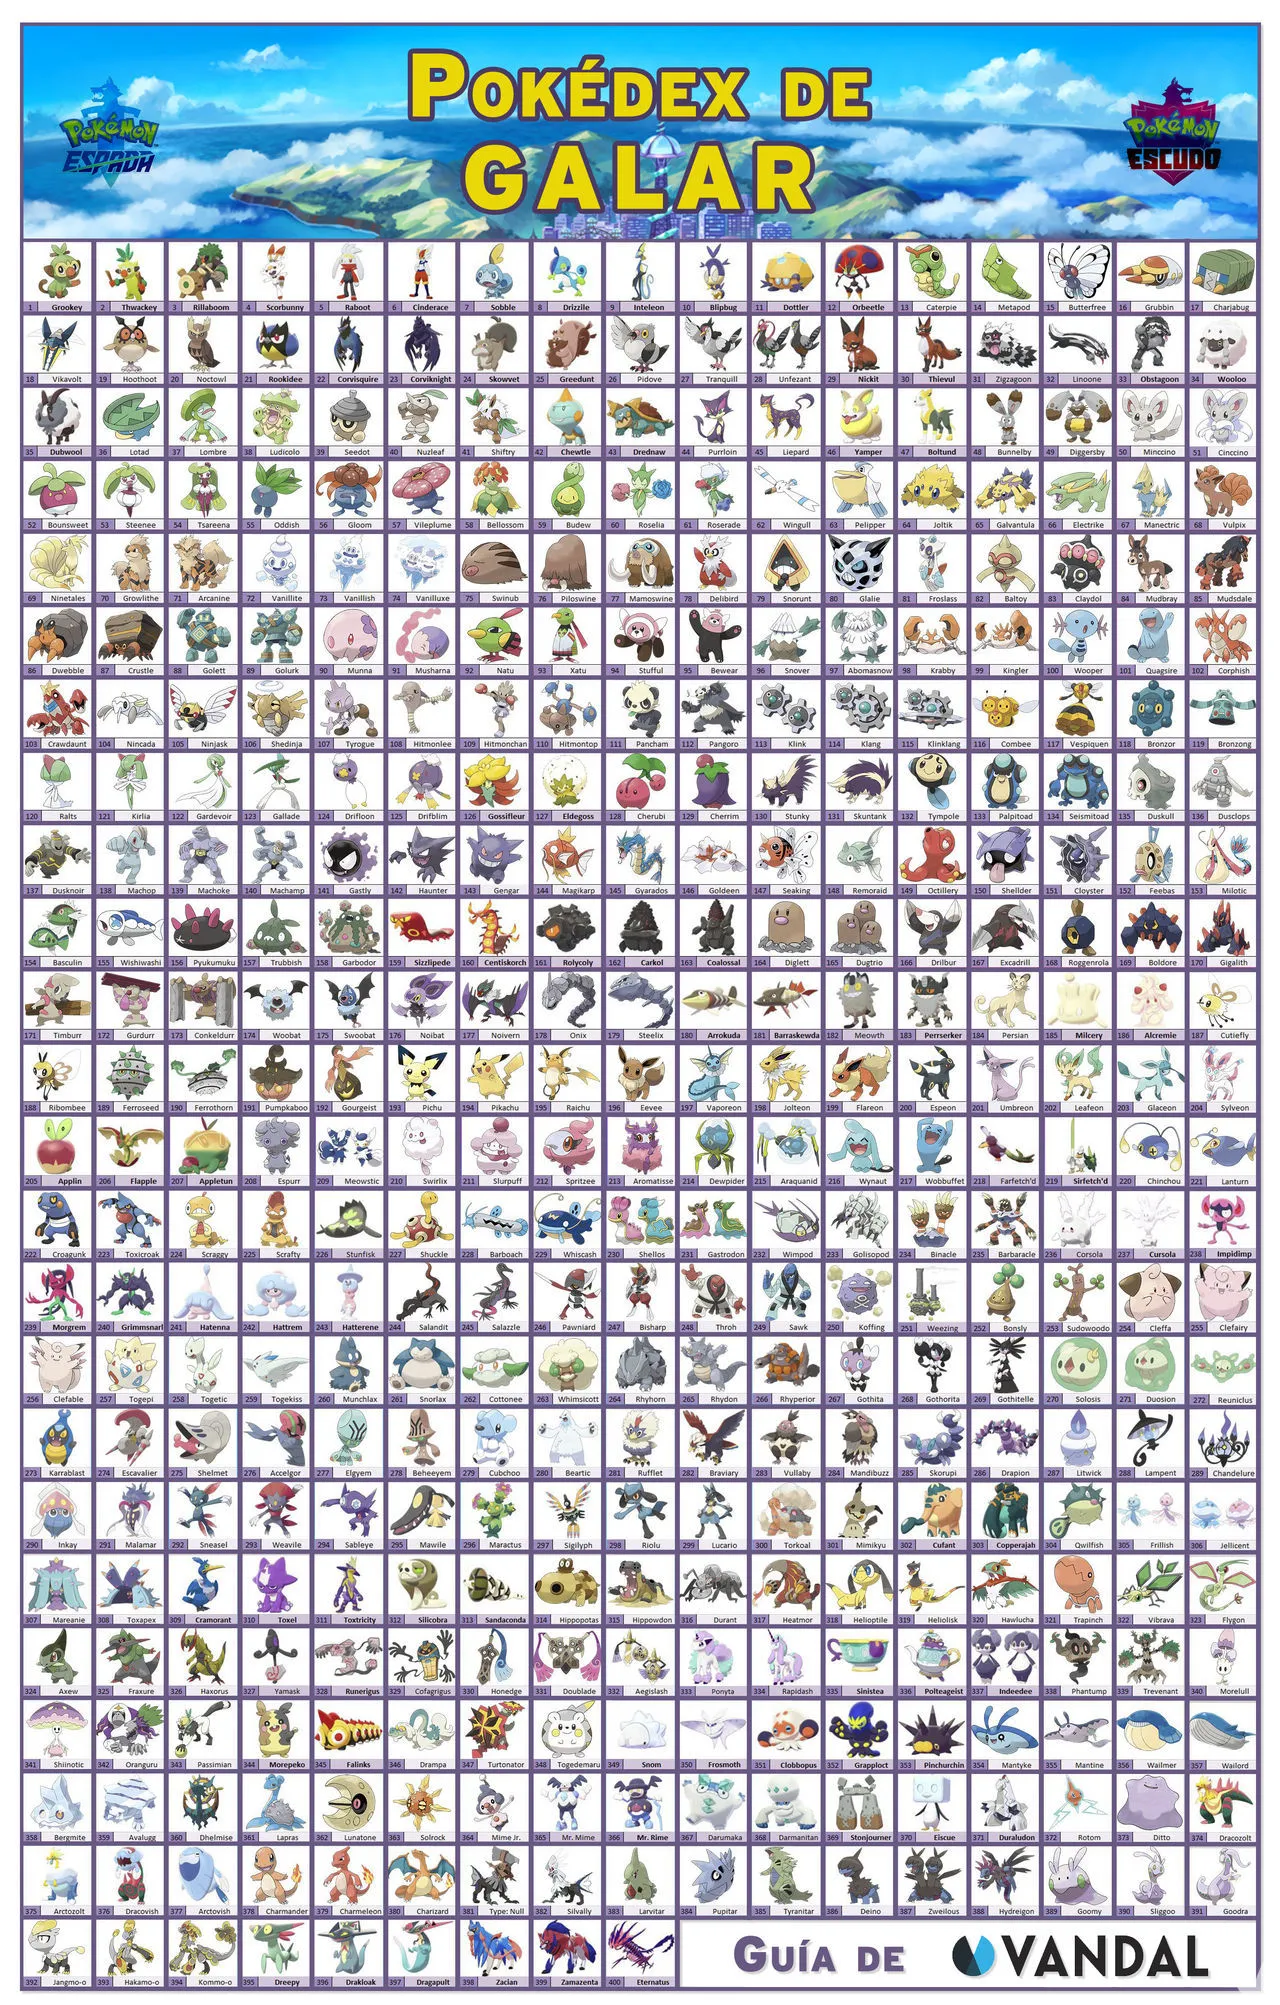 Lista de localizaciones de Pokémon de Rojo Fuego y Verde Hoja - WikiDex, la  enciclopedia Pokémon